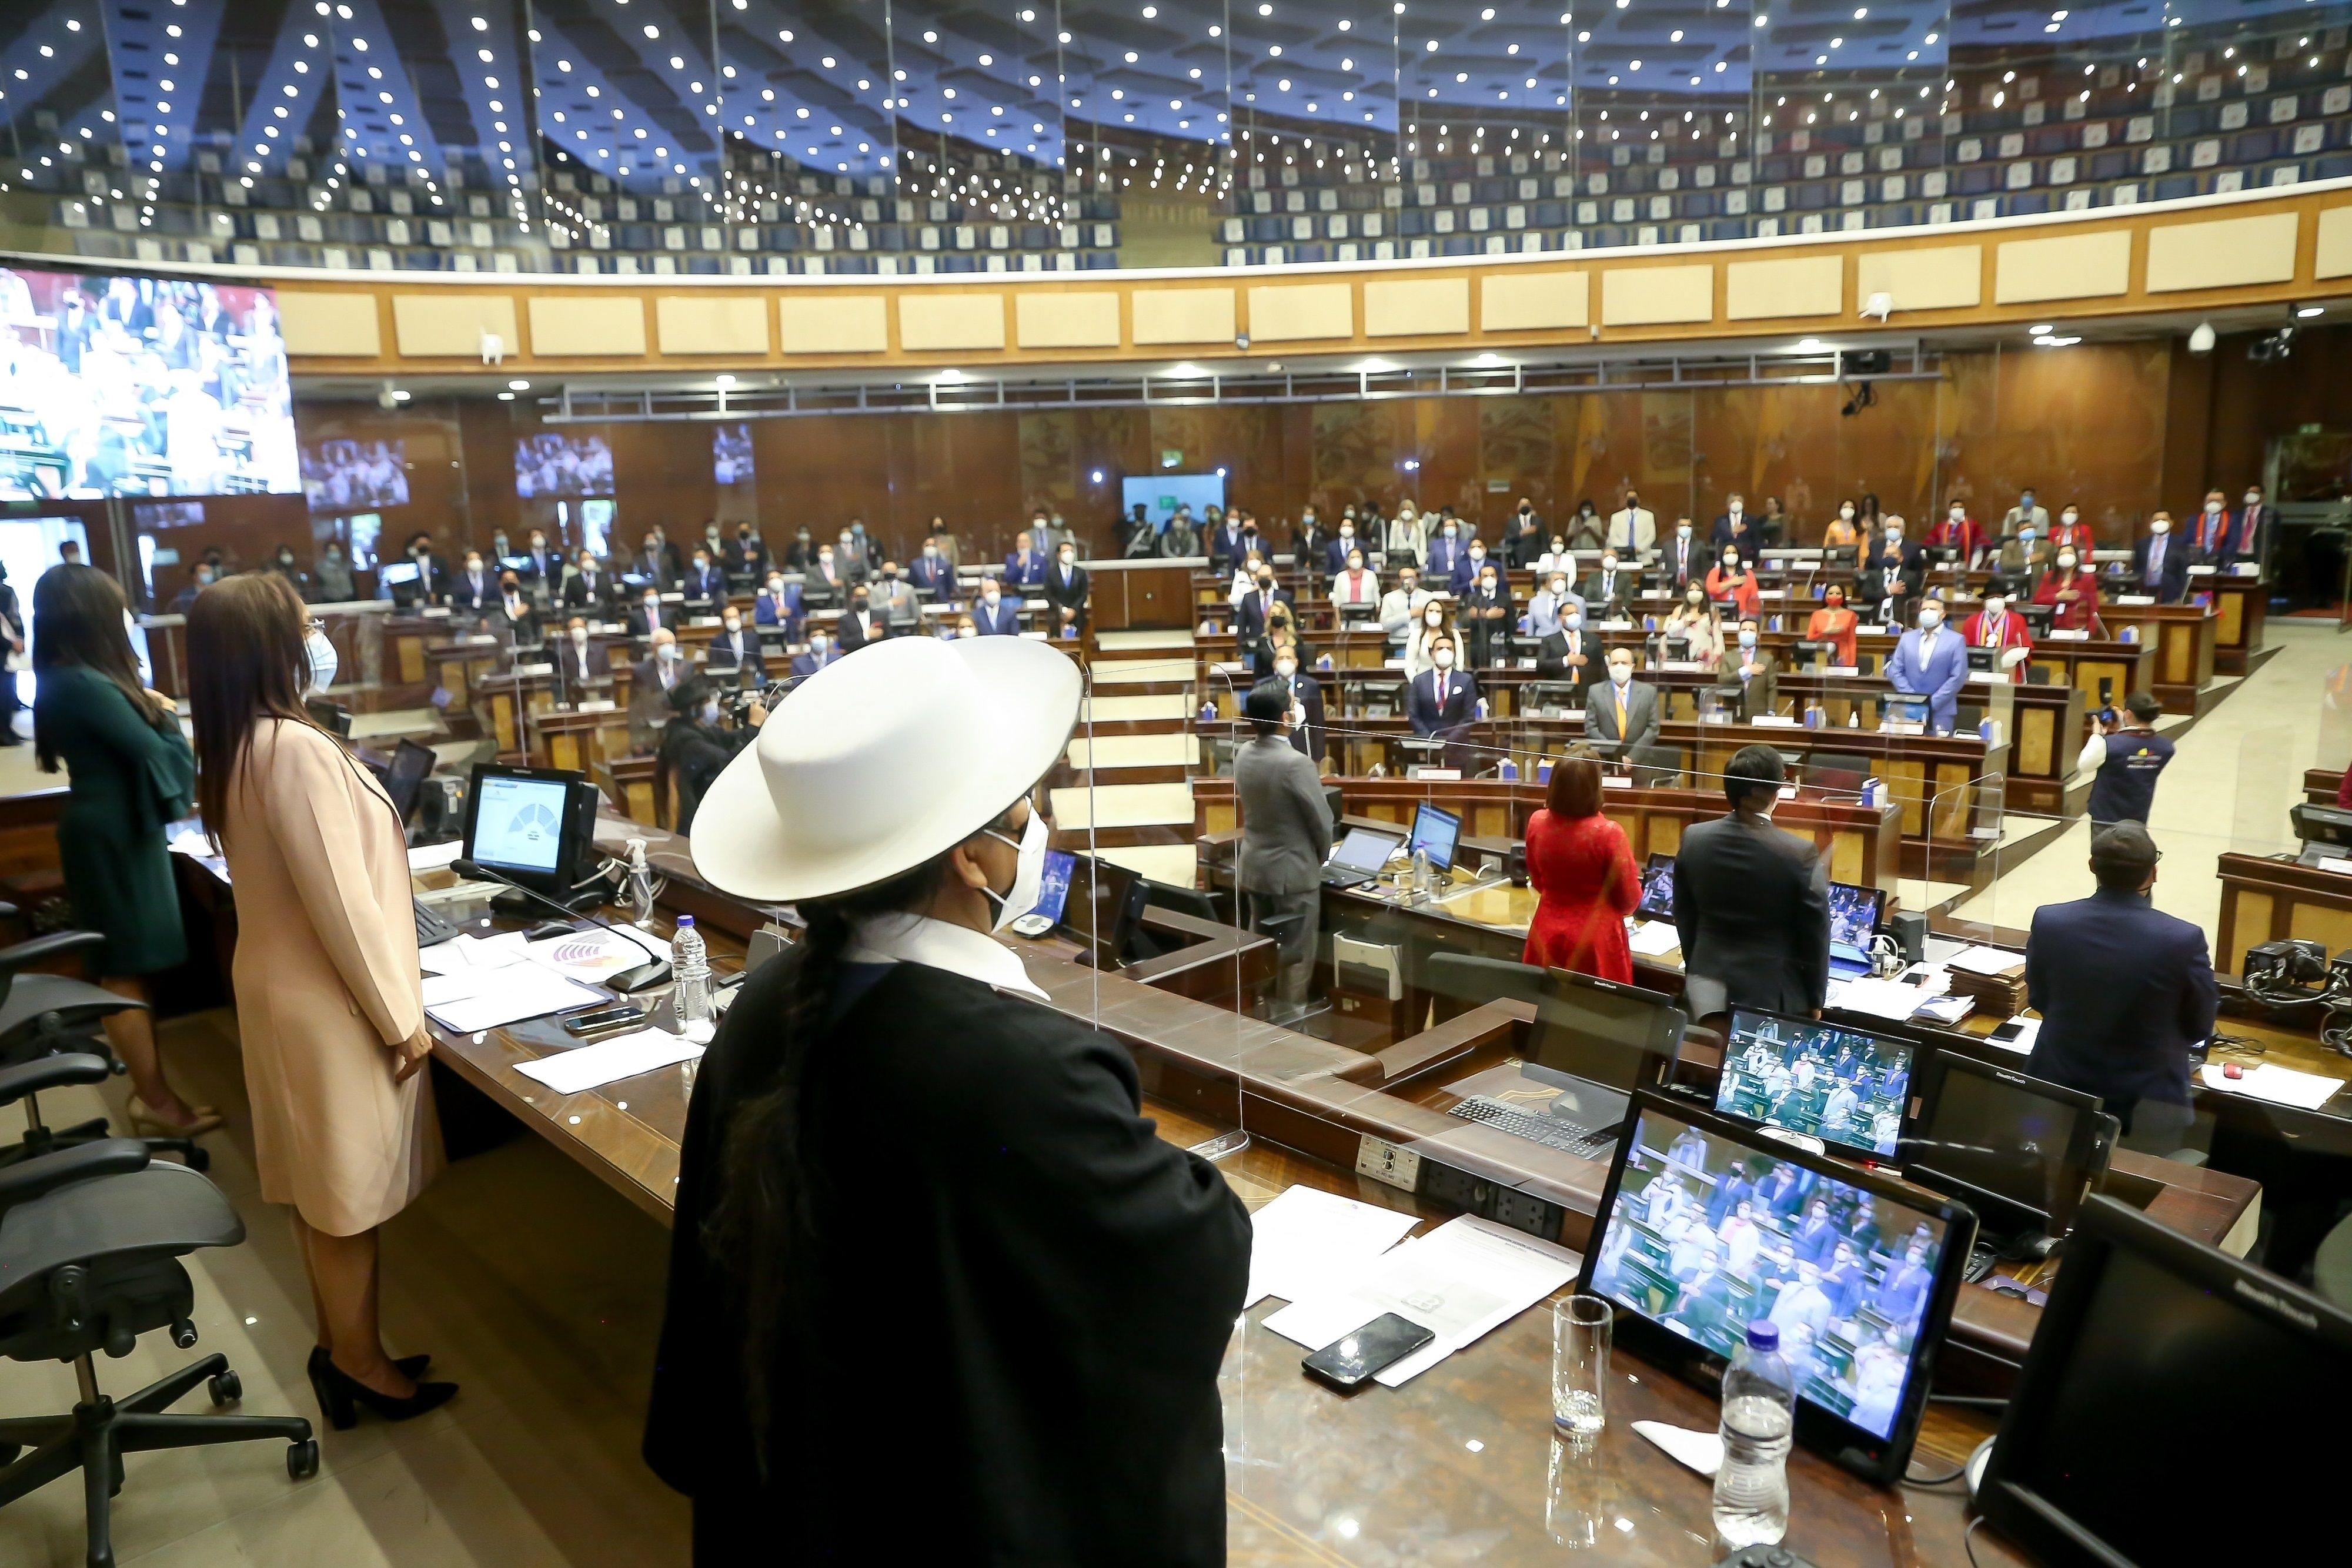 Fotografía cedida por la Asamblea Nacional de Ecuador en la que registró una toma general de la primera sesión plenaria del Parlamento, en Quito (Ecuador). EFE/Asamblea Nacional de Ecuador
